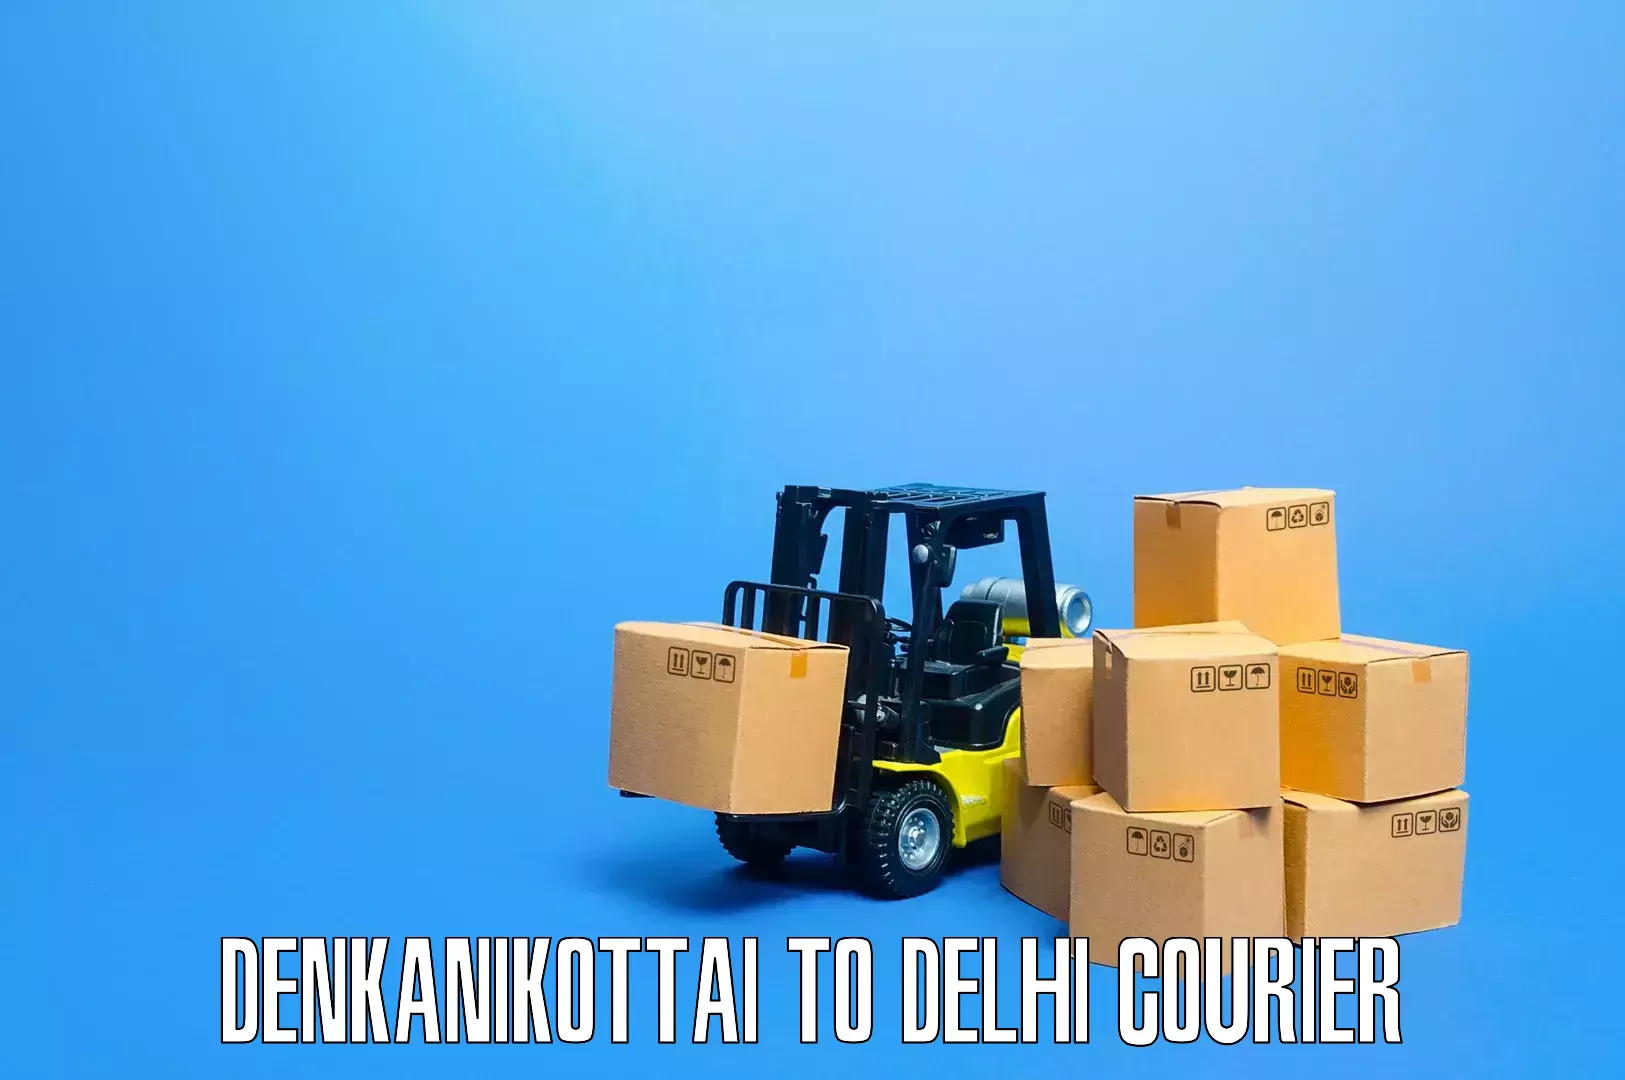 Full-service relocation in Denkanikottai to East Delhi